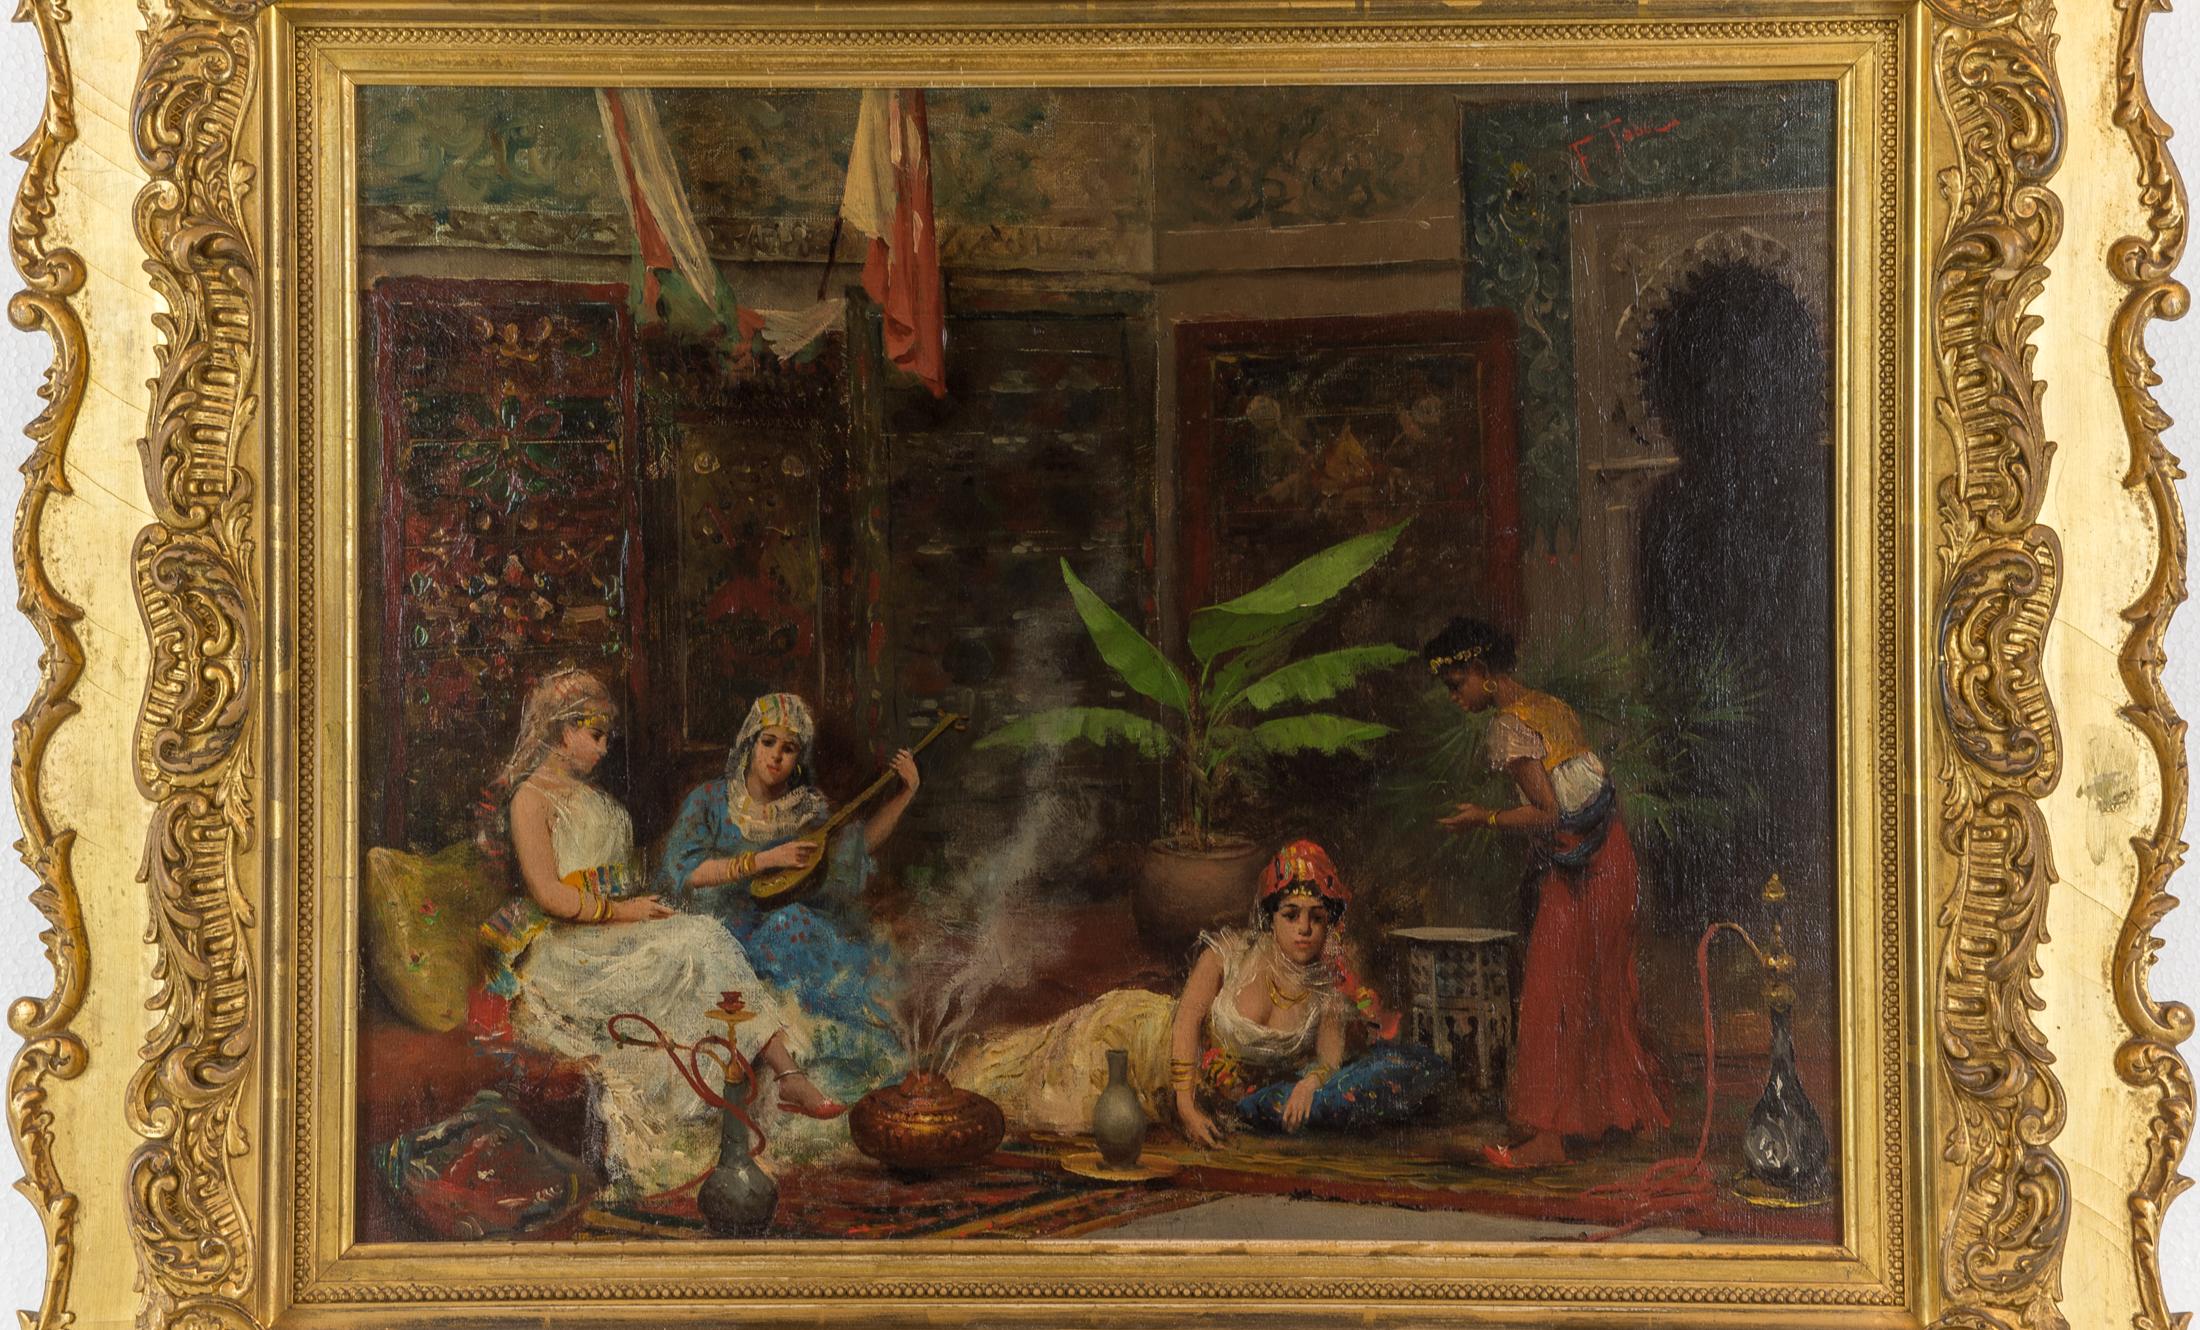 Une exquise peinture orientaliste représentant des concubines dans un harem par Fabio Fabbi

Artiste : Fabio Fabbi (1861-1910)
Origine : italienne
Signature : signé F. Fabbi (en haut à droite)
Support : huile sur toile
Dimensions : 14 po x 18